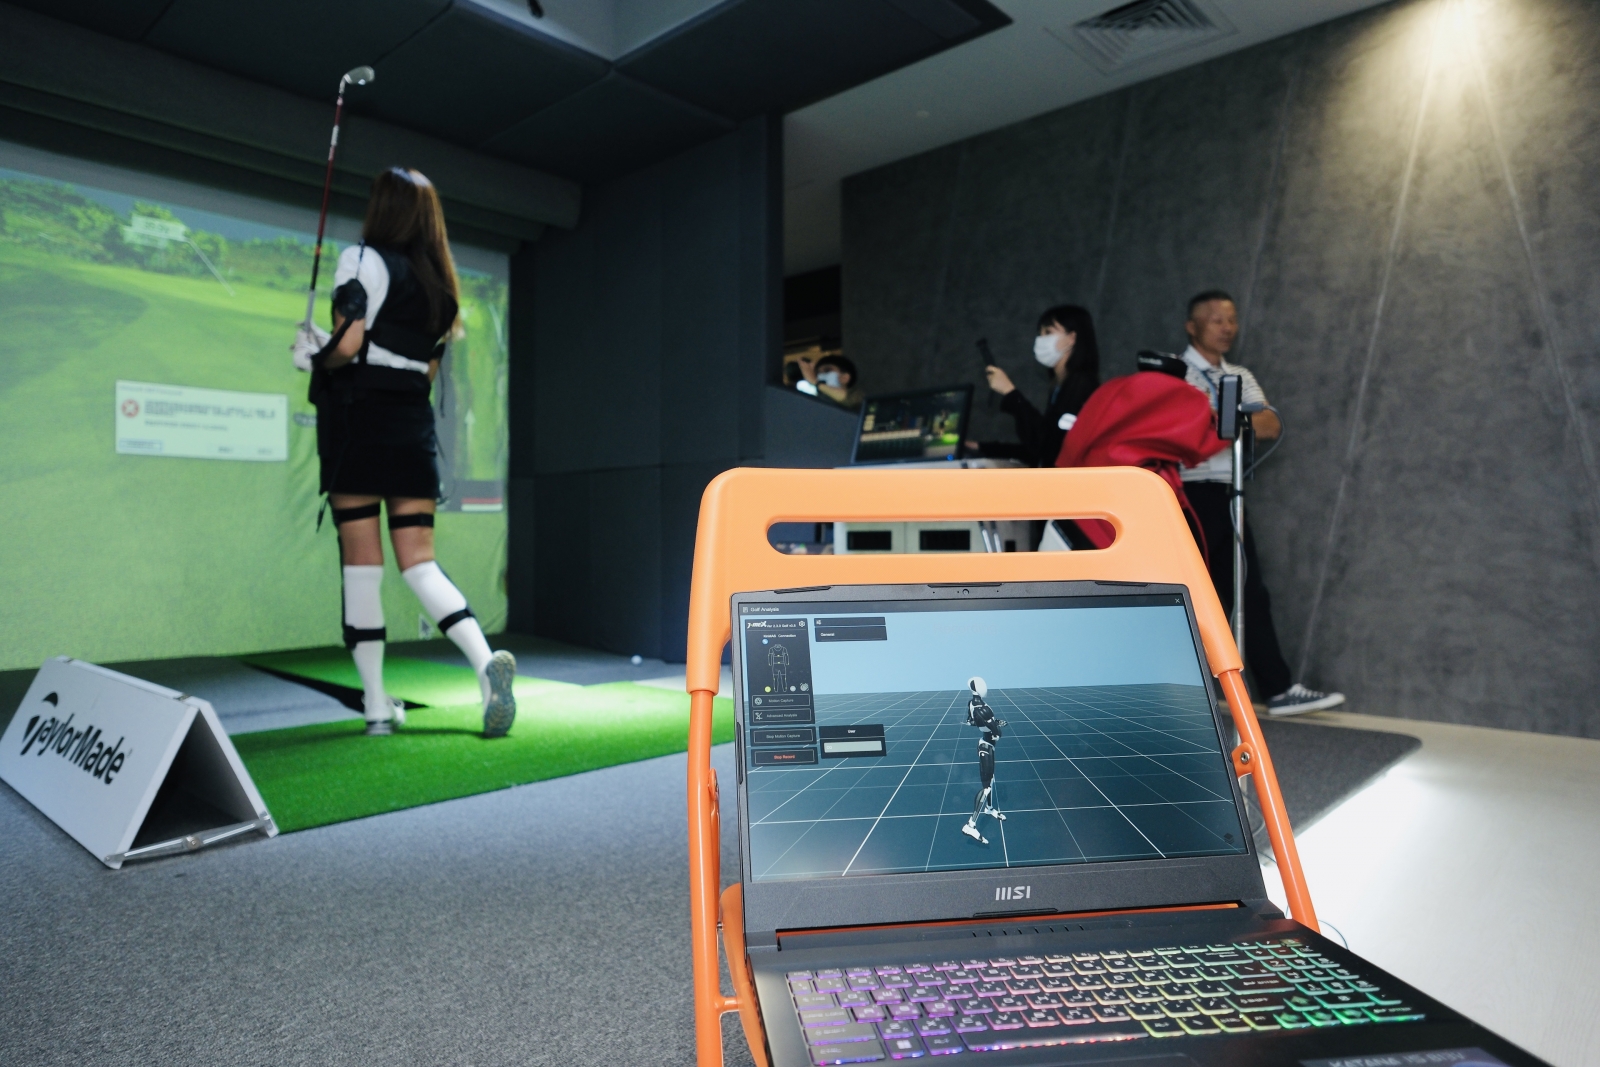 運用體感科技，結合智慧紡織聚陽實業，打造數位化全身動作捕捉體感能量，可用於高爾夫球員的揮桿檢測，進一步提升其表現。